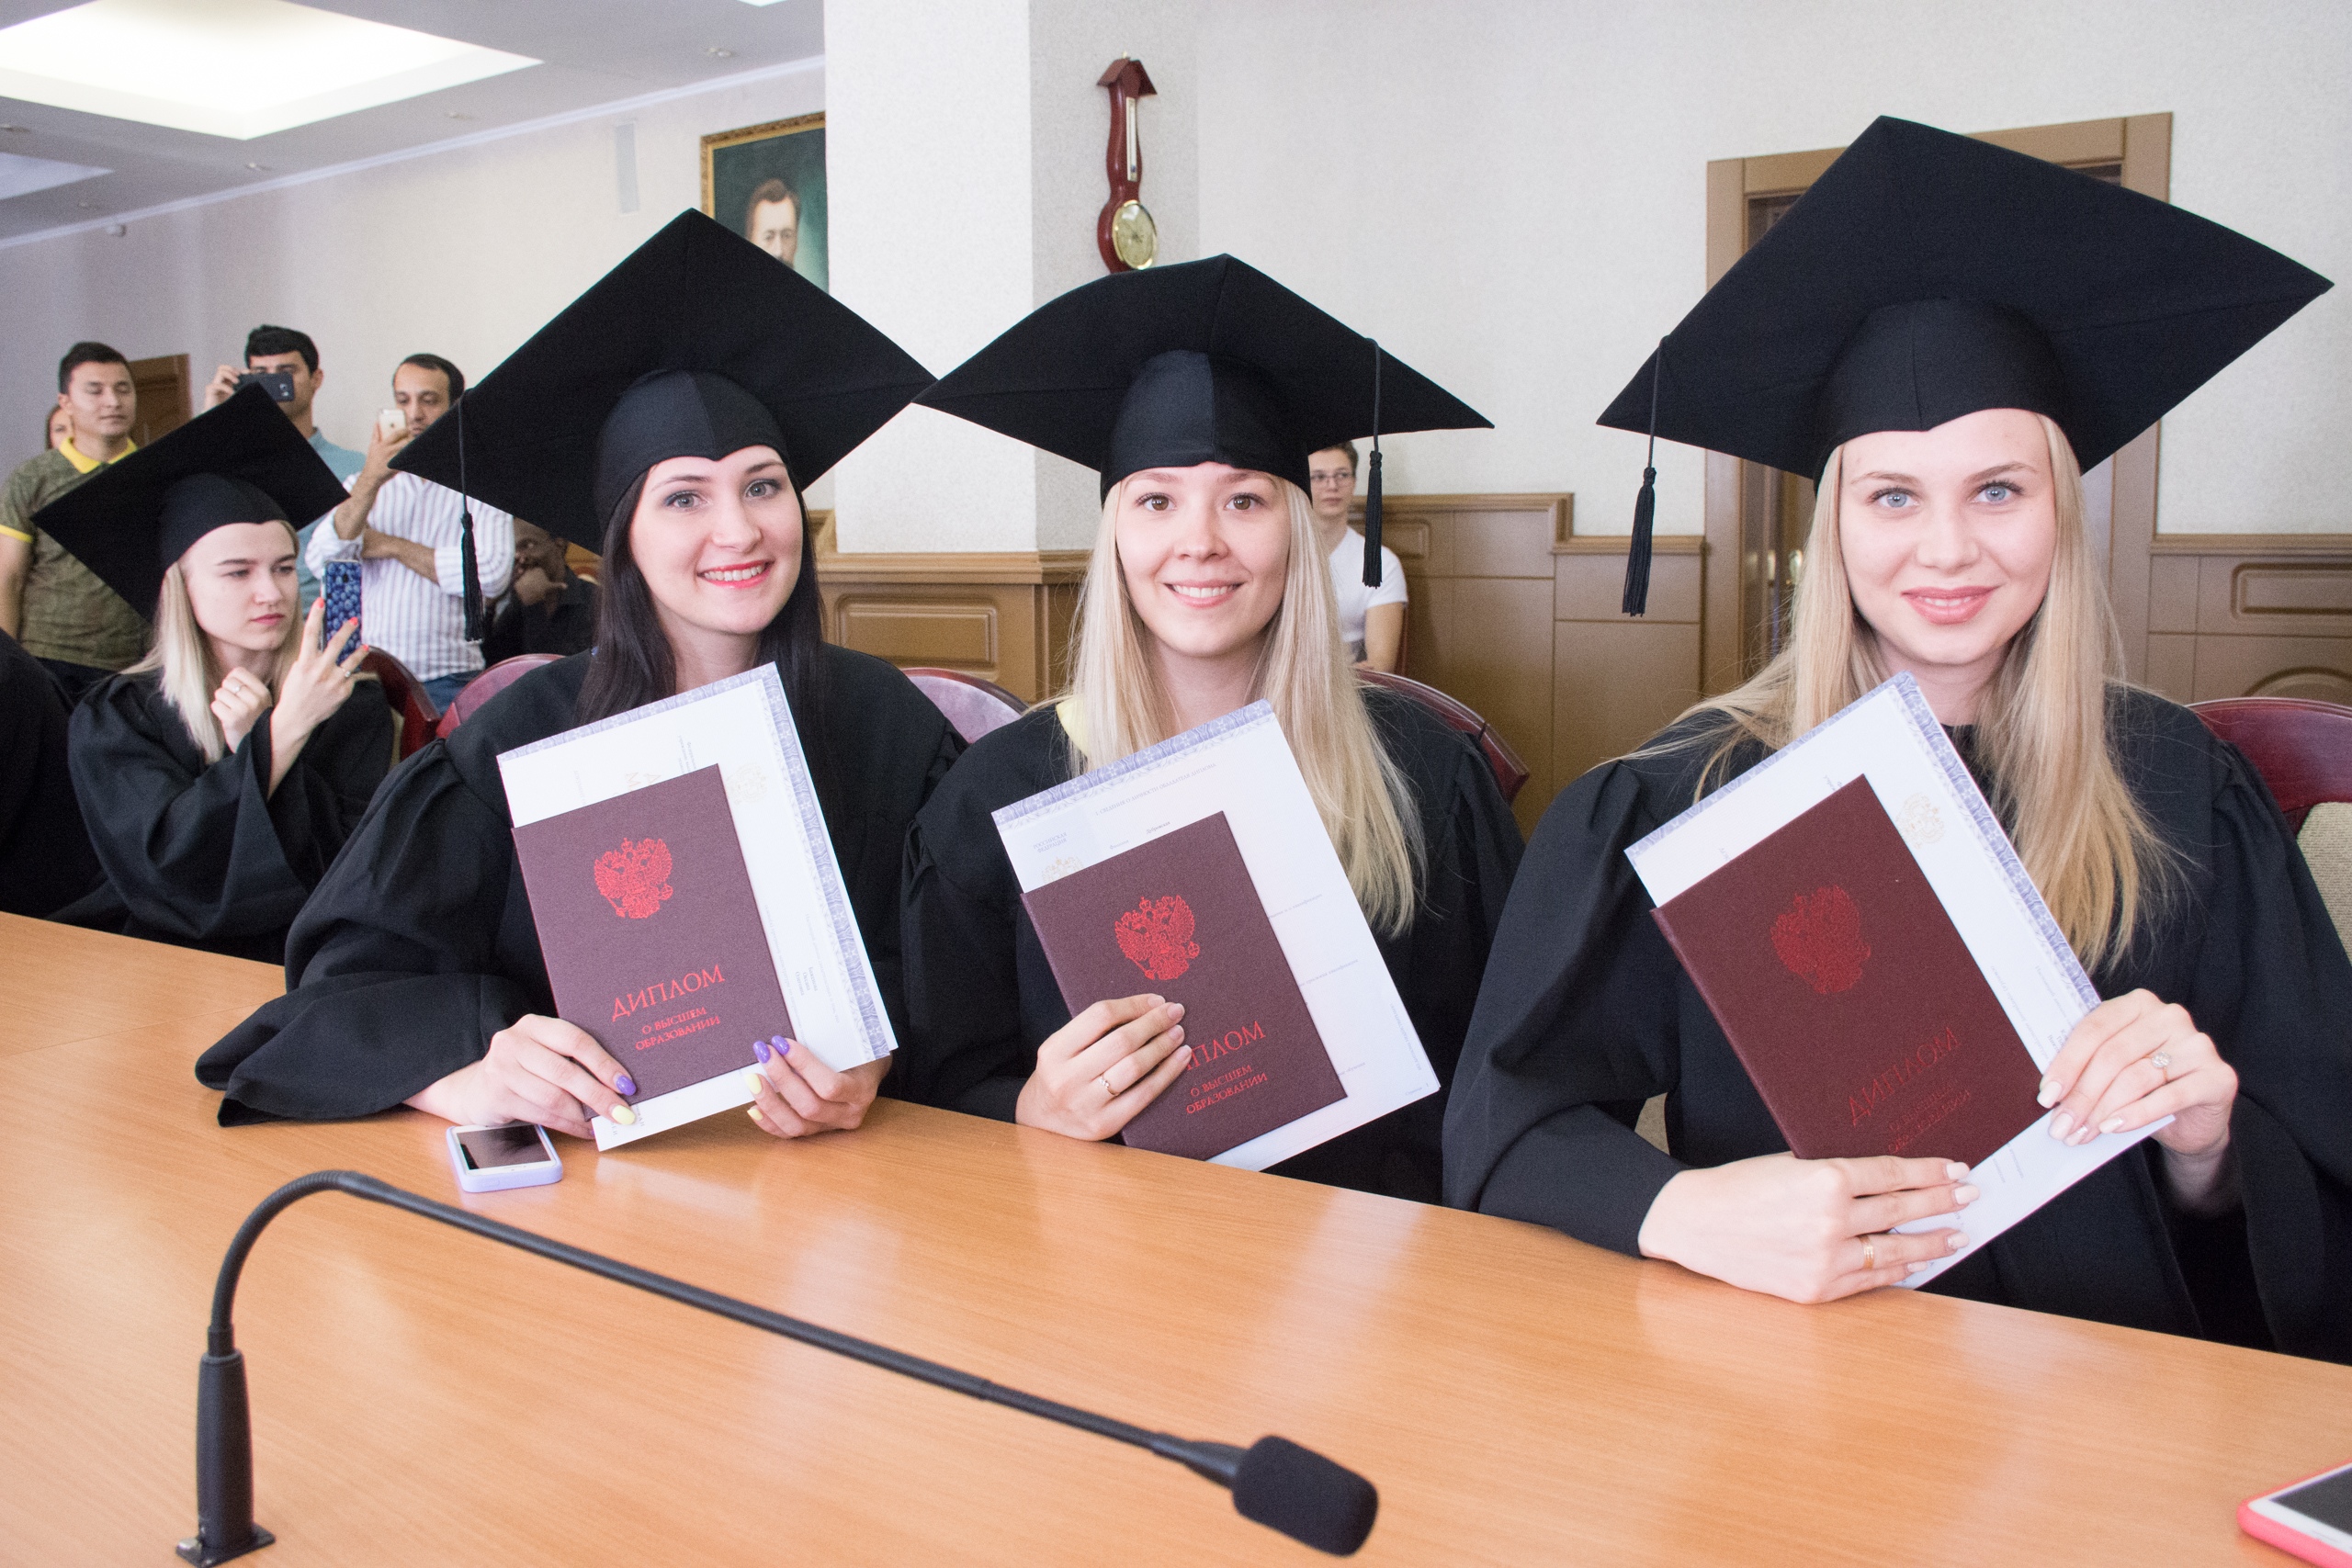 институт фотографии в москве высшее образование